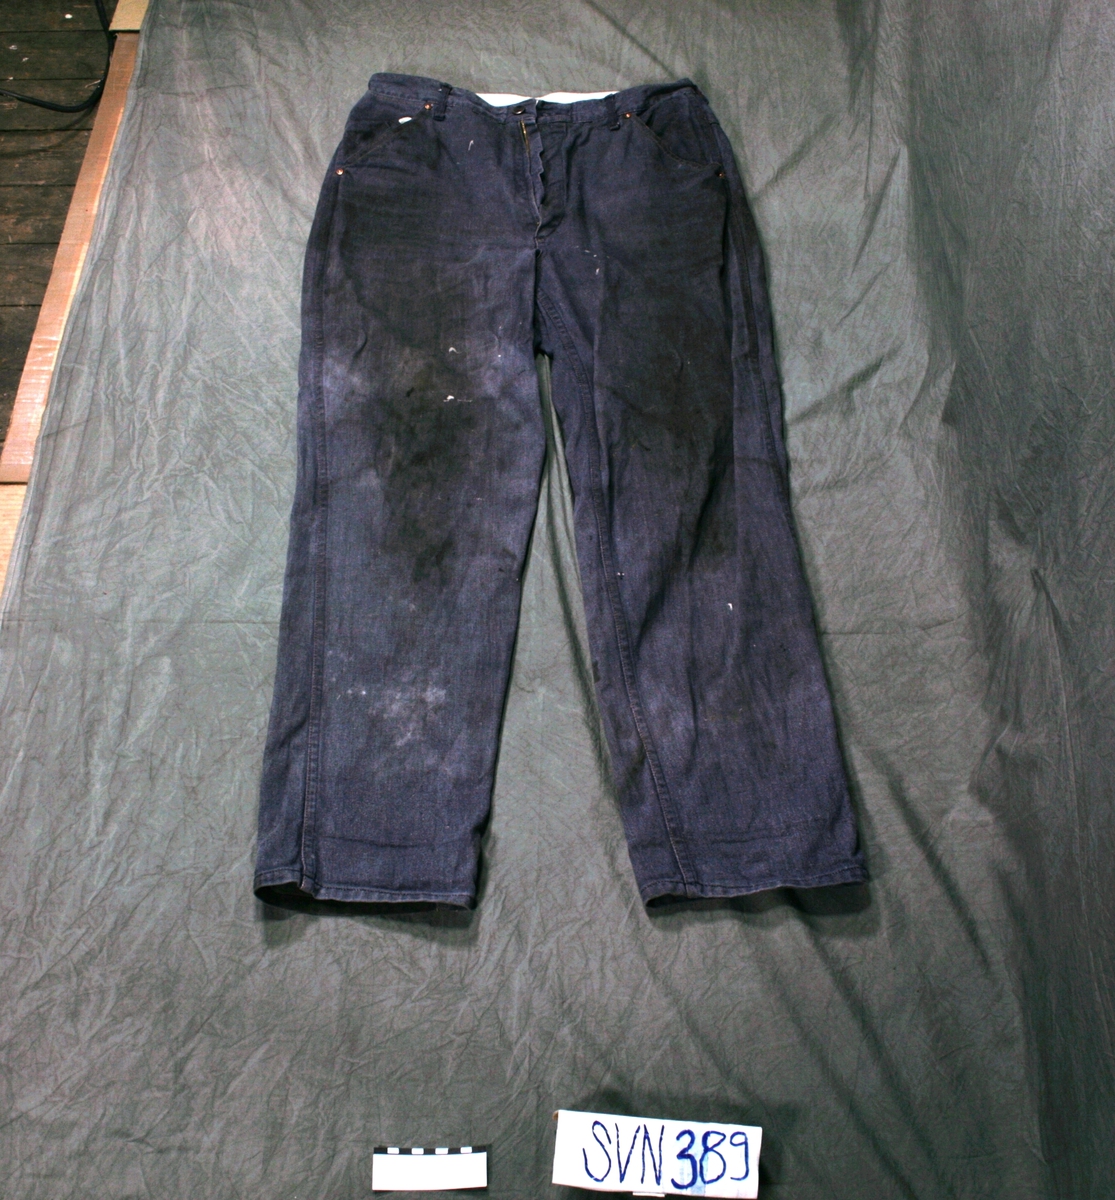 Jeansbukse, 5 lommer, i mørkeblåttj eansstoff, brun detaljsøm.Stor mørk flekk på baksiden av det ene buksebenet.
